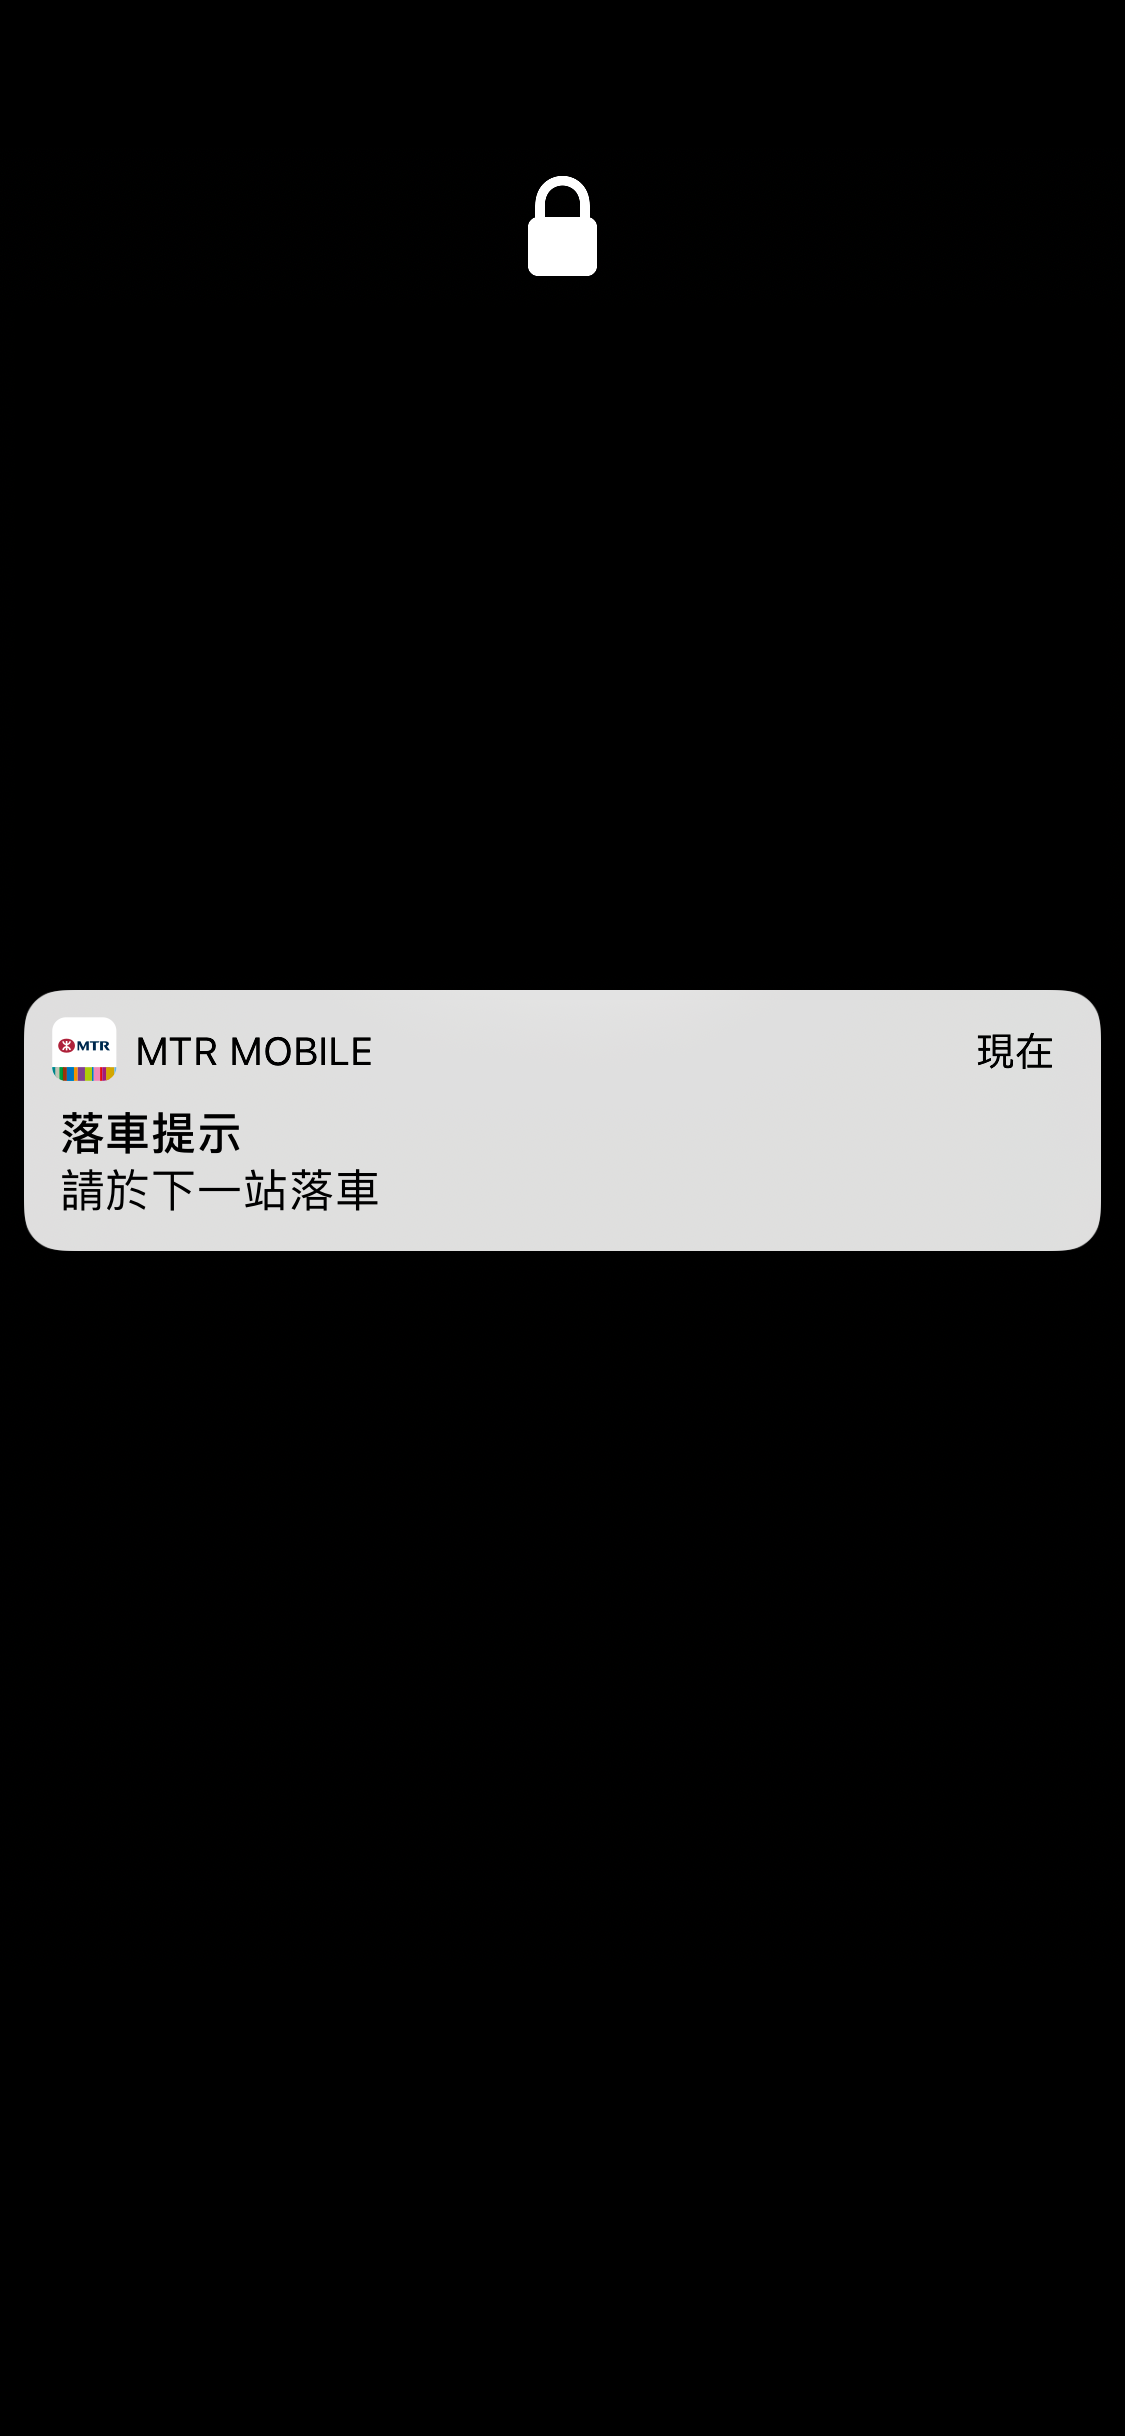 即使你不在使用MTR Mobile時亦會收到有關推送通知